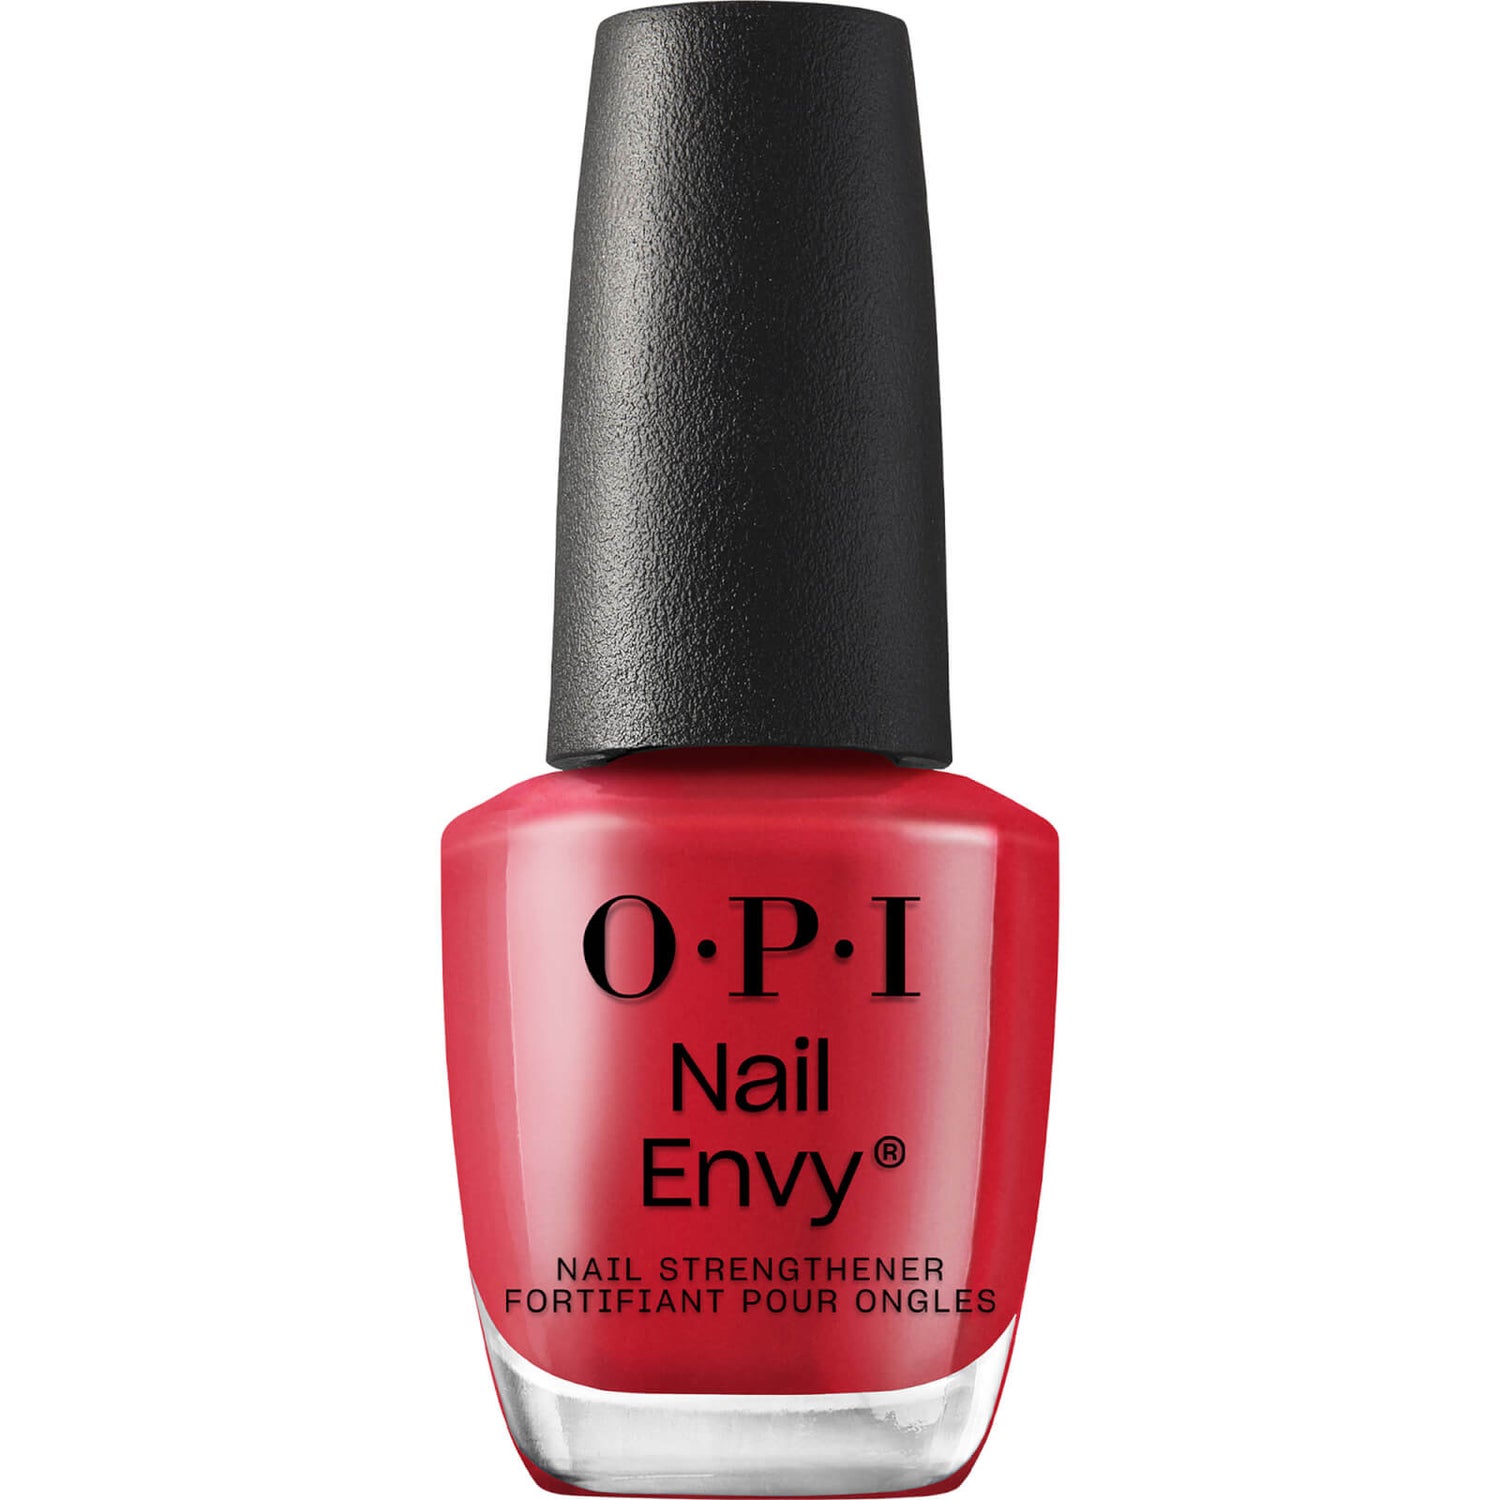 Tratamiento fortalecedor de uñas Nail Envy de OPI - Big Apple Red, 15 ml